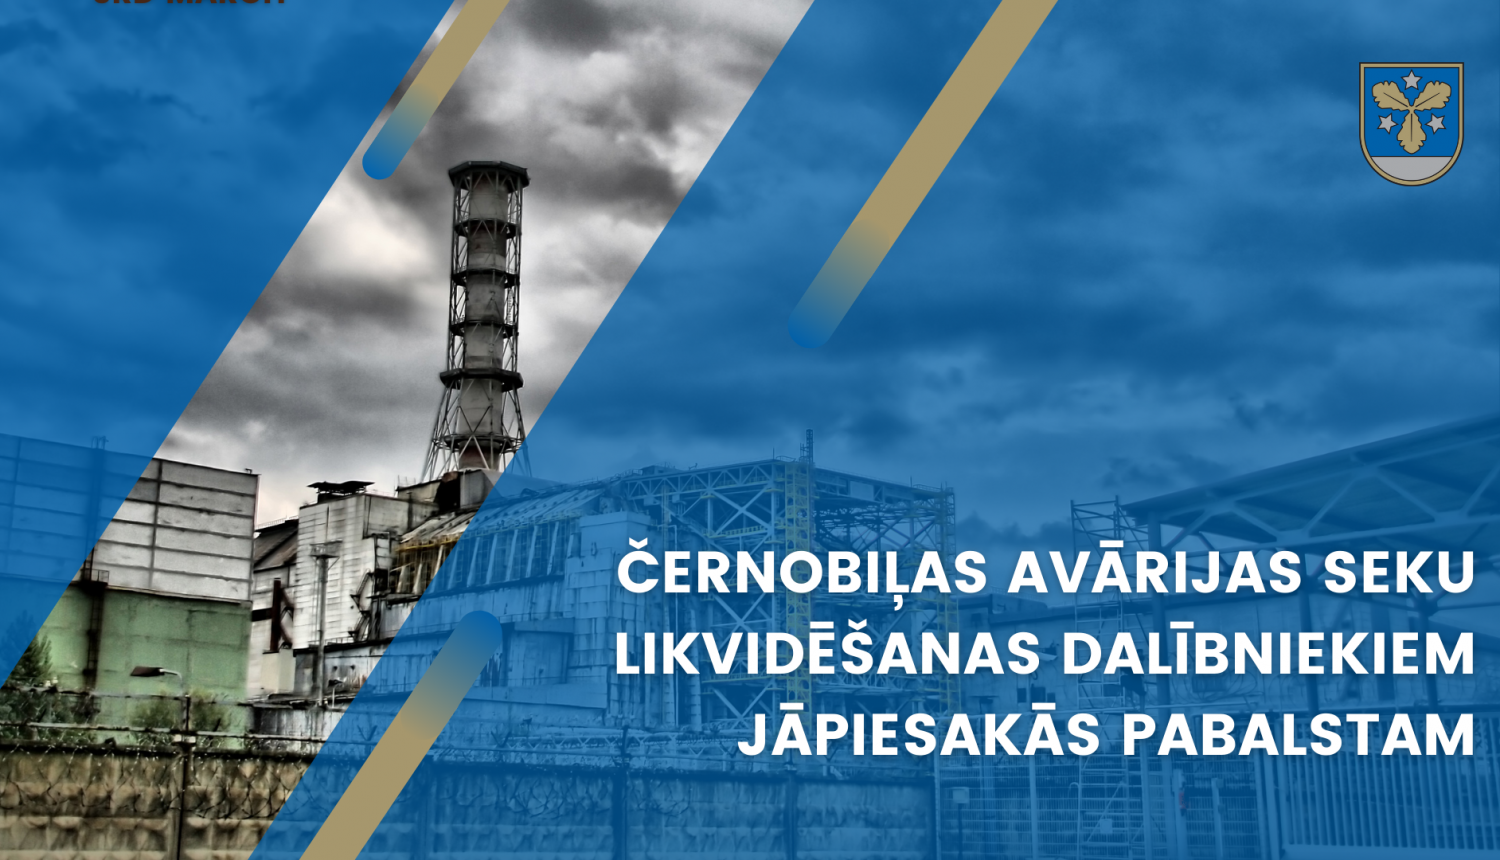 Černobiļas avārijas seku likvidēšanas dalībniekiem jāpiesakās pabalstam